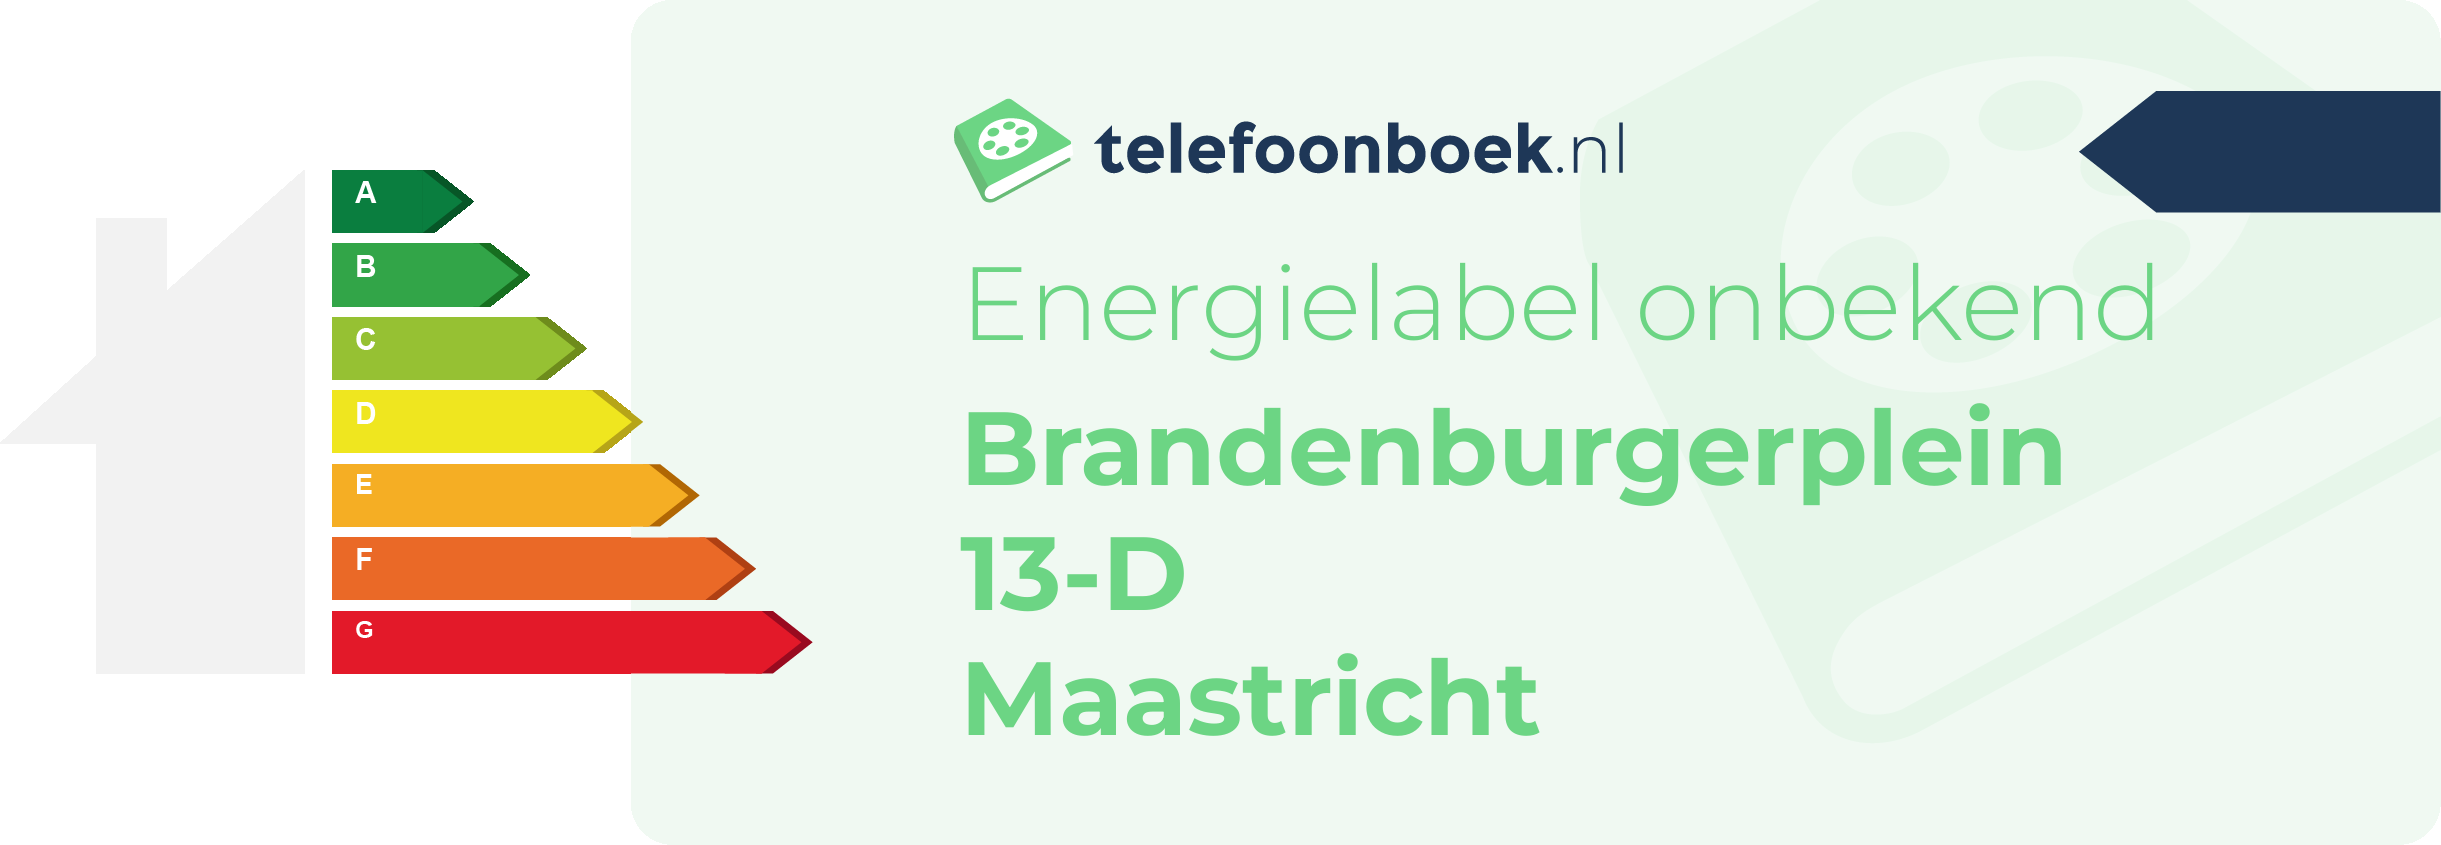 Energielabel Brandenburgerplein 13-D Maastricht